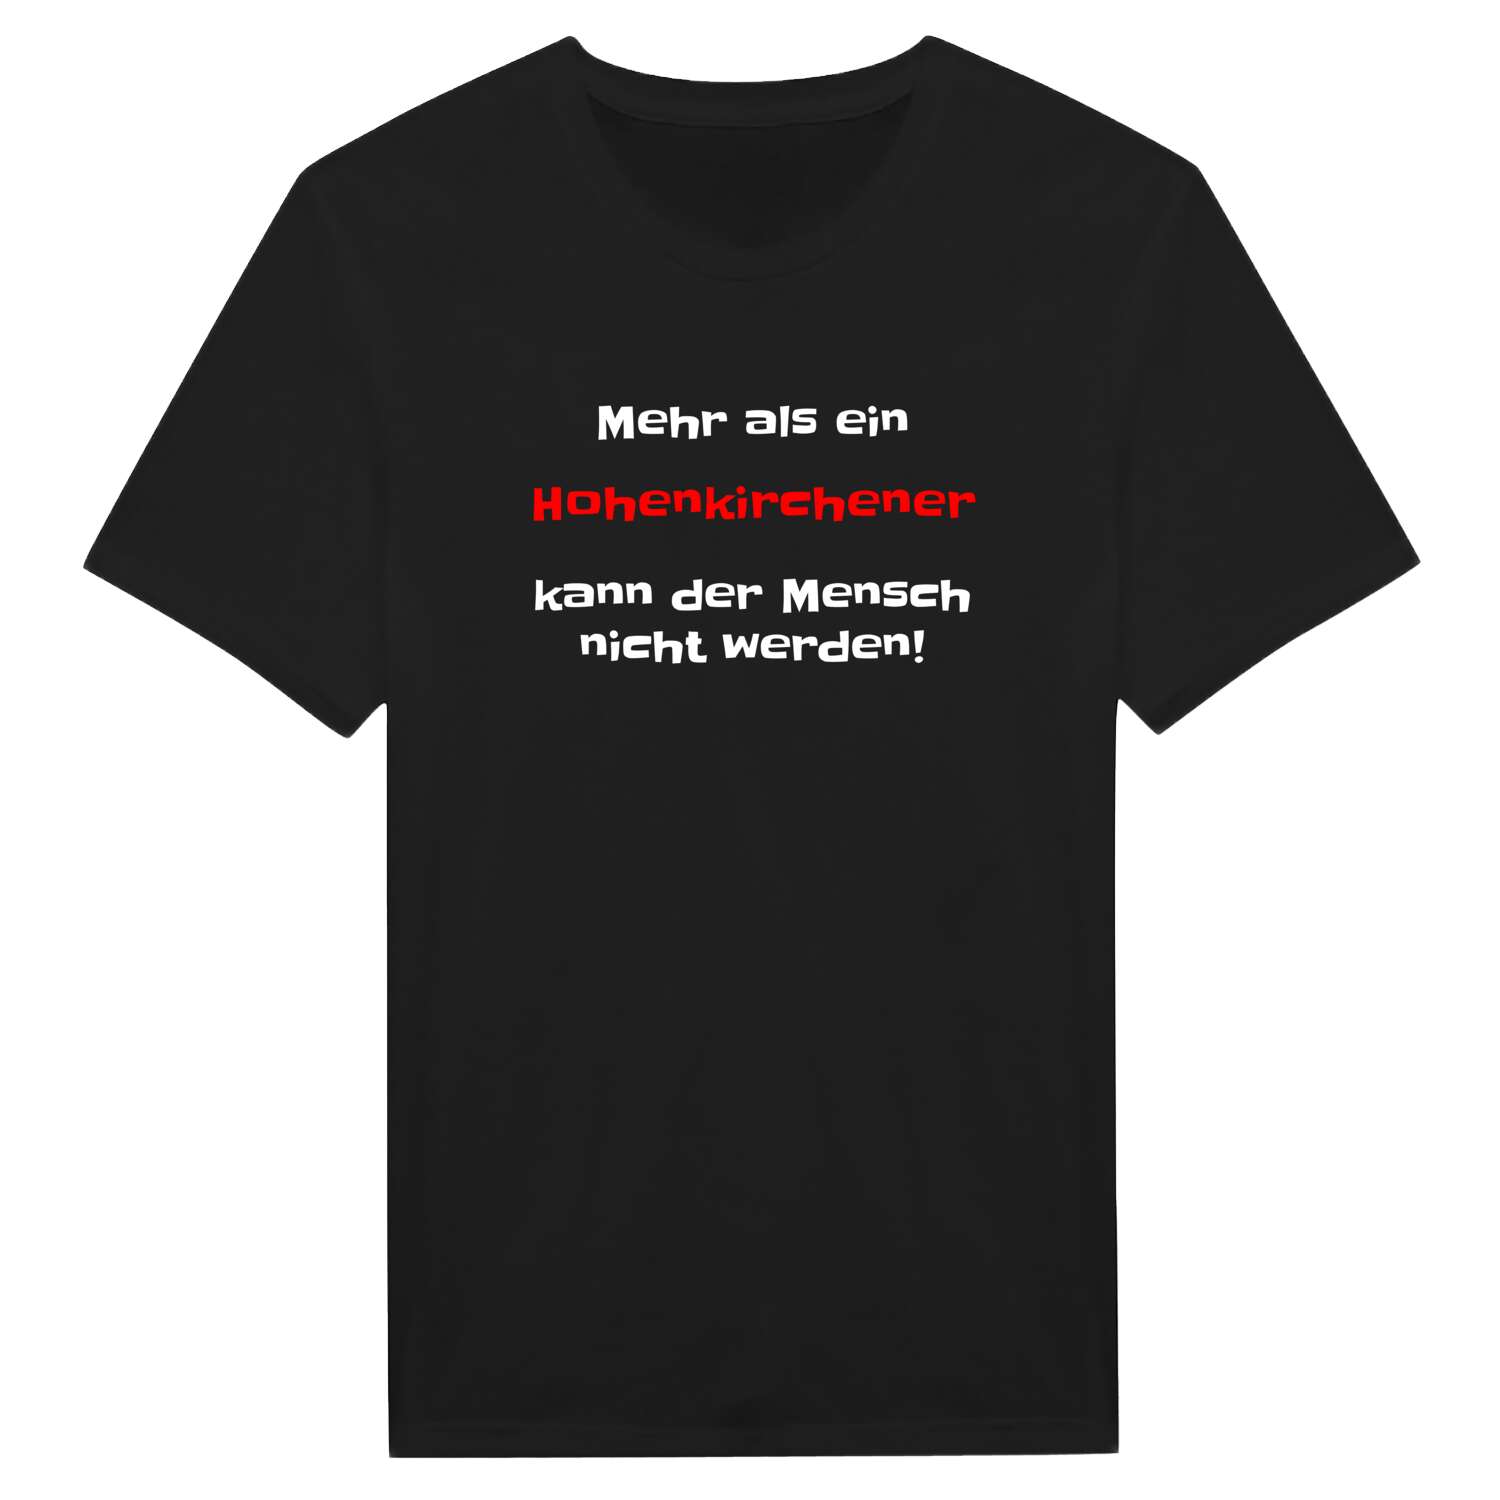 Hohenkirchen T-Shirt »Mehr als ein«